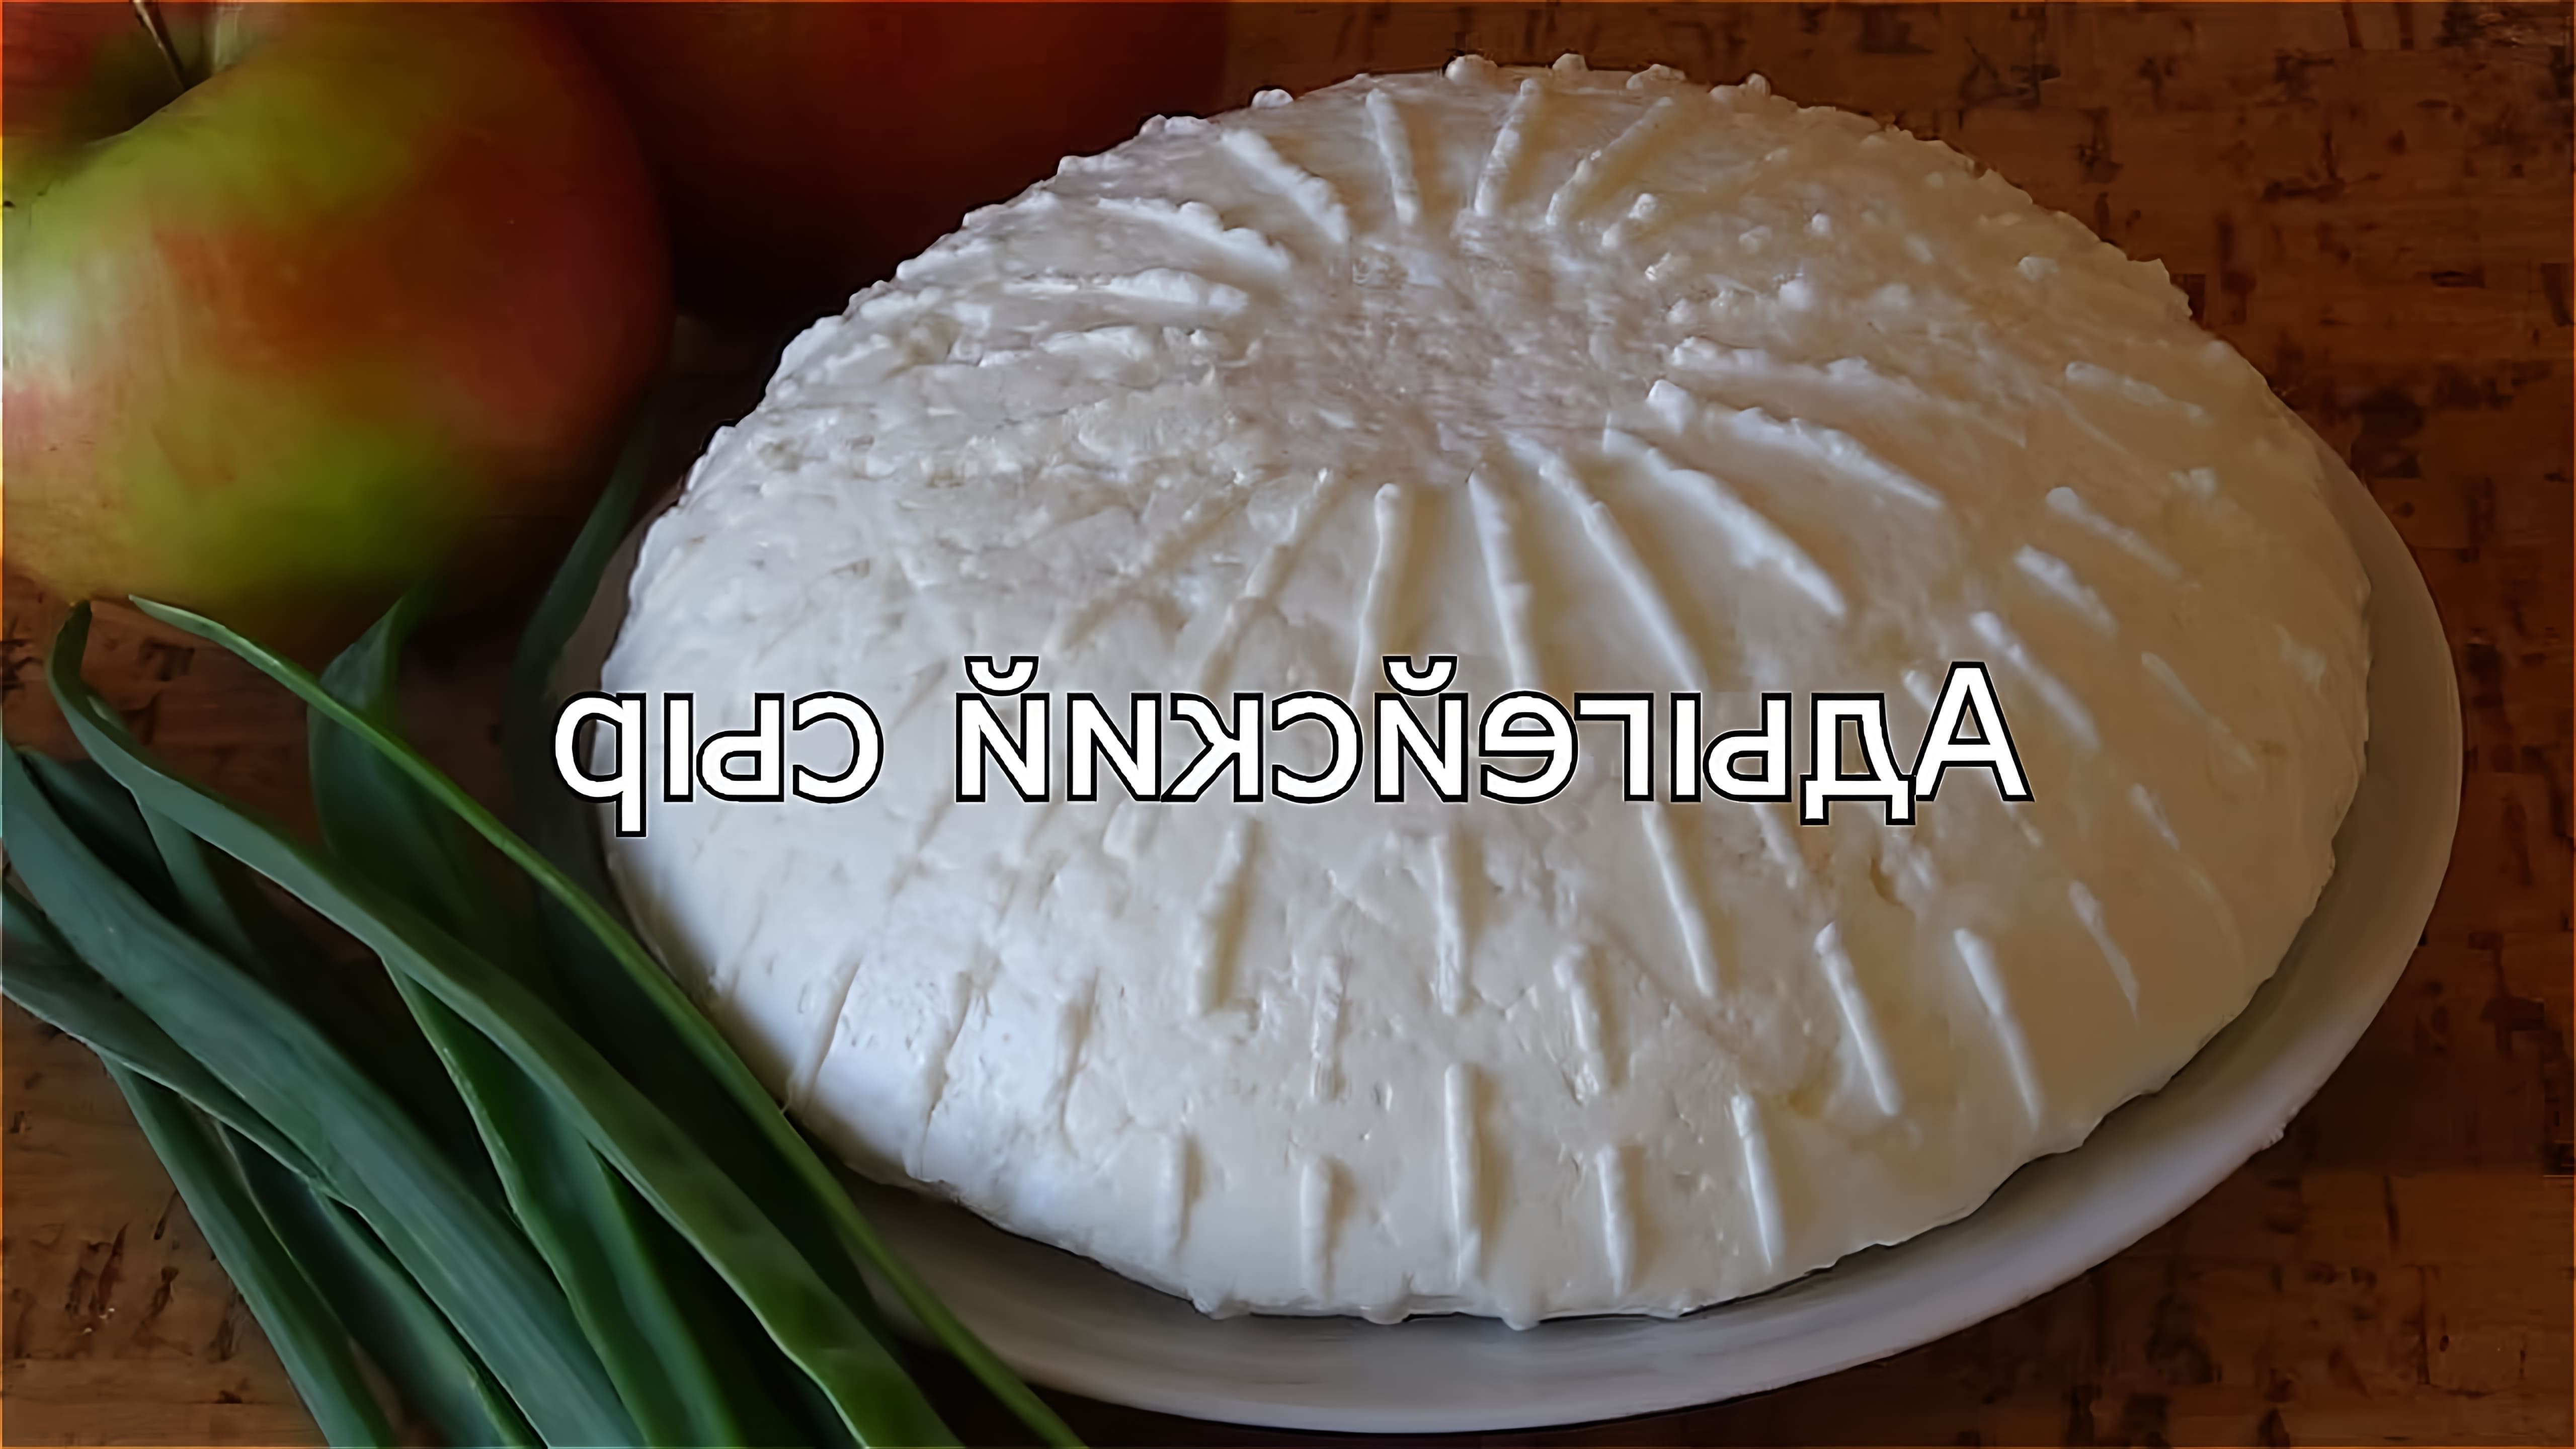 В этом видео демонстрируется процесс приготовления адыгейского сыра